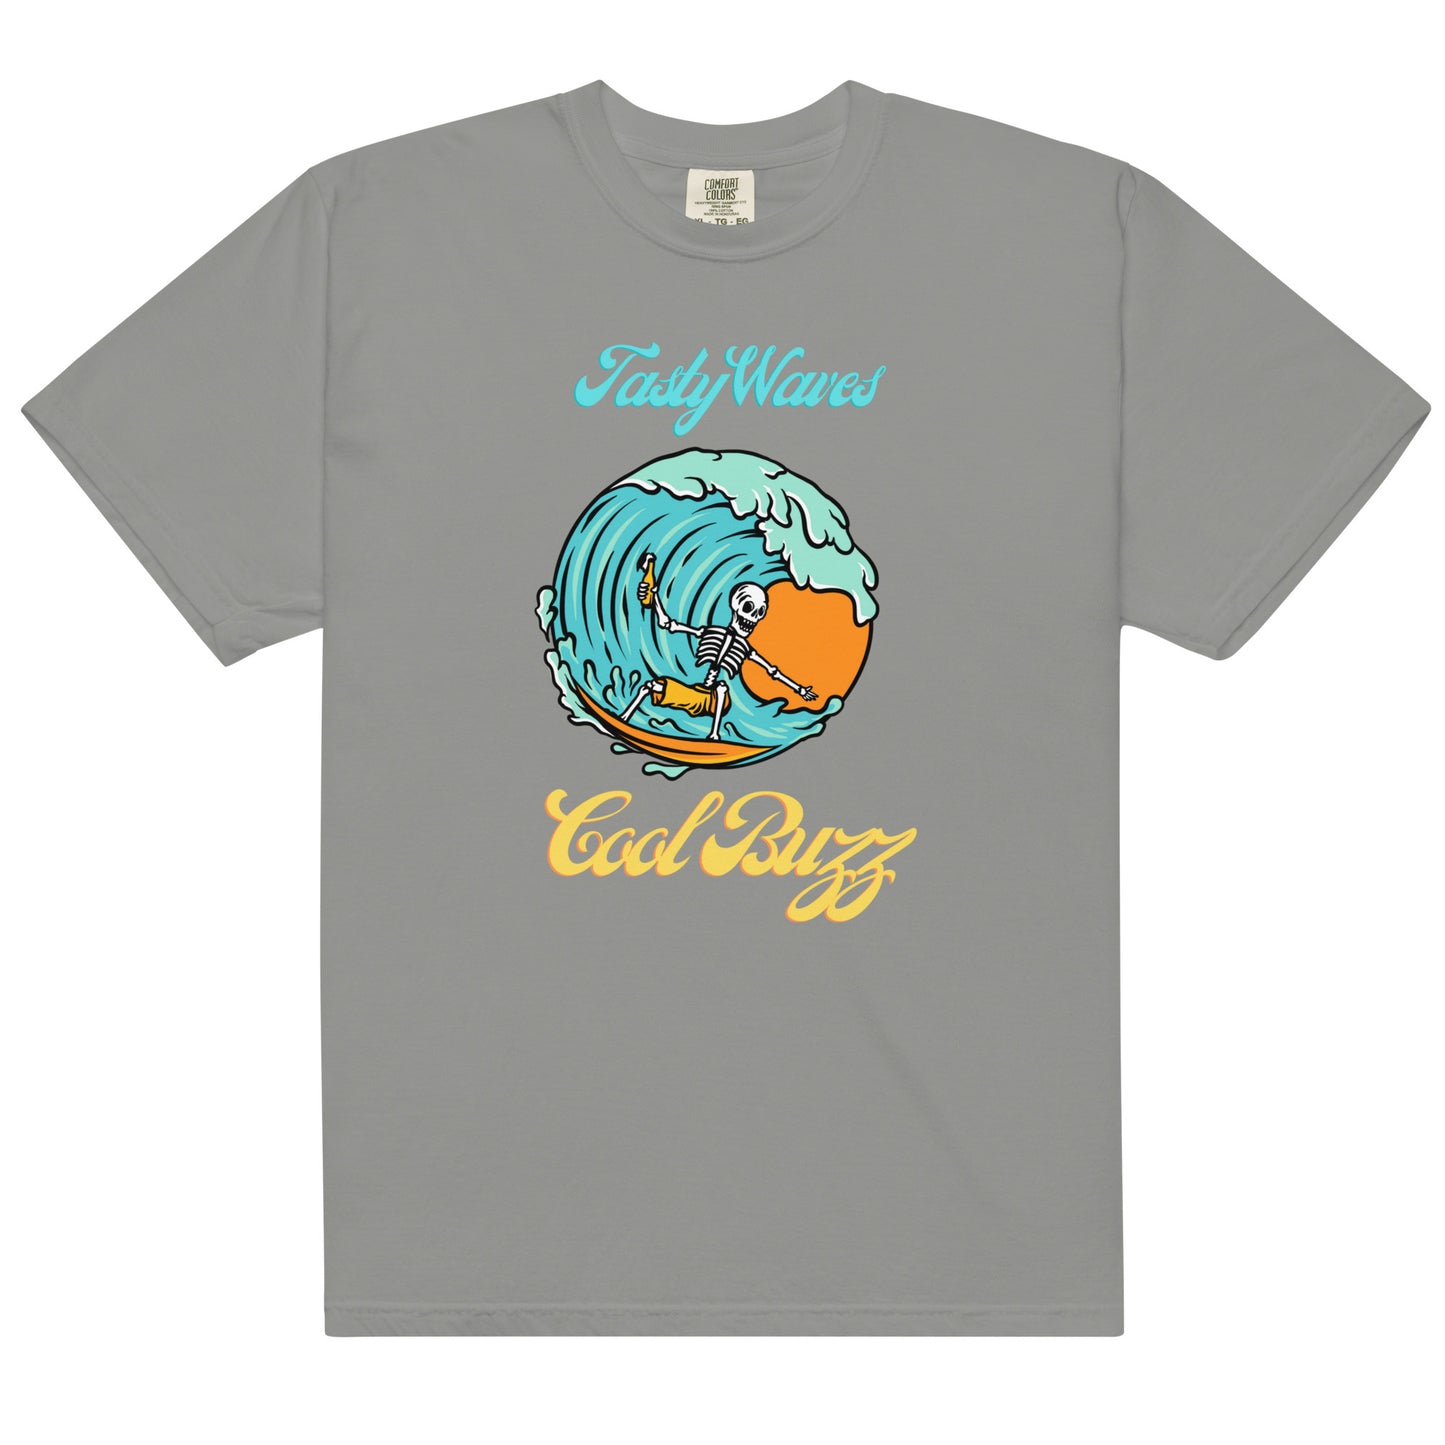 Tasty Waves Cool Buzz Men’s garment-dyed heavyweight t-shirt